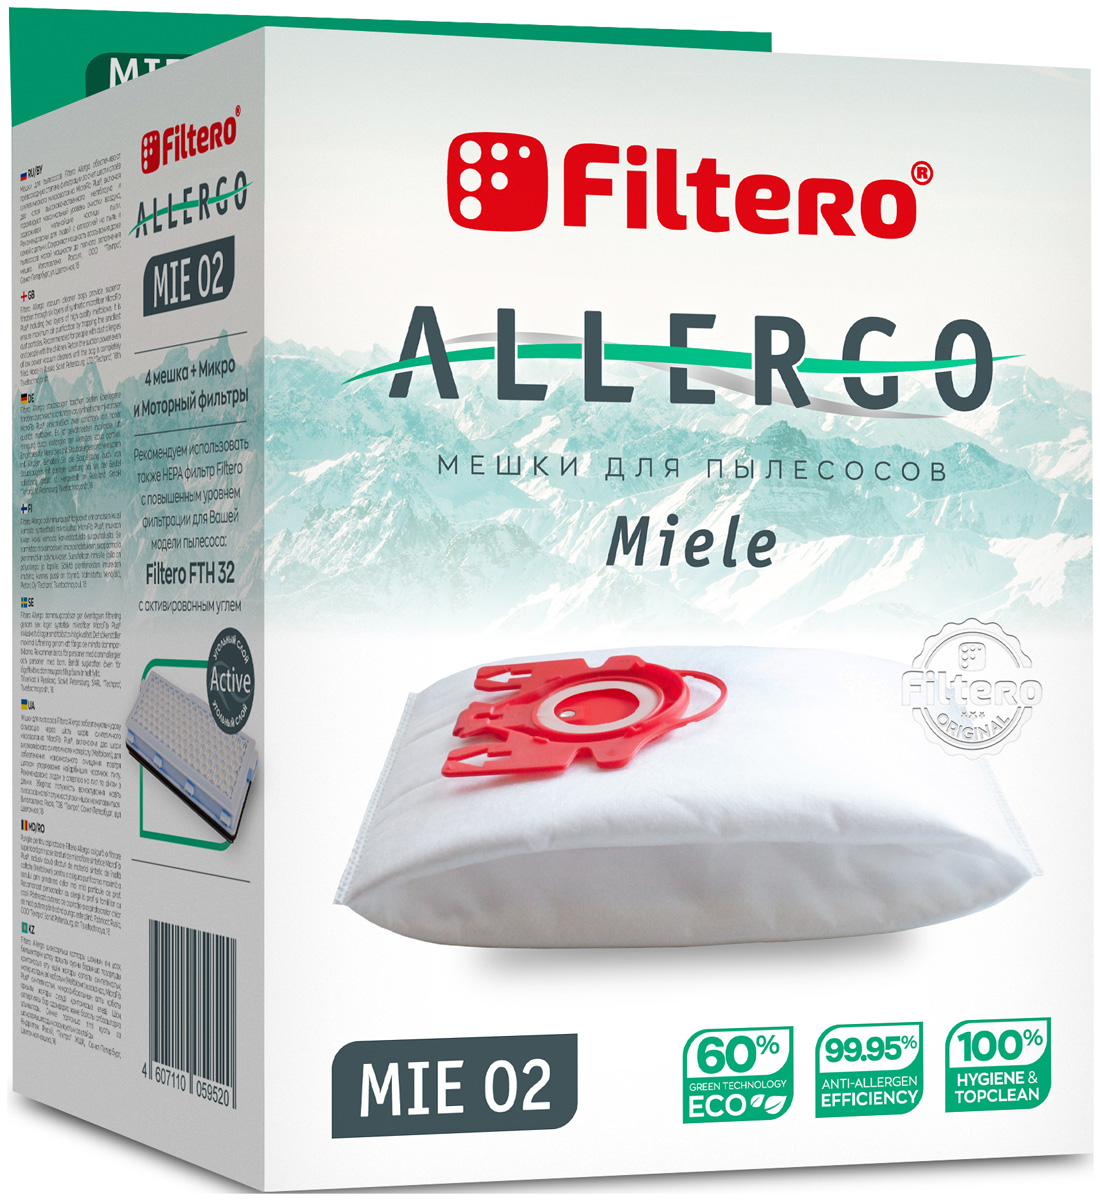 Пылесборники Filtero MIE 02 Allergo 4 шт. + моторный фильтр и микрофильтр пылесборники filtero mie 04 allergo 4шт моторный фильтр и микрофильтр